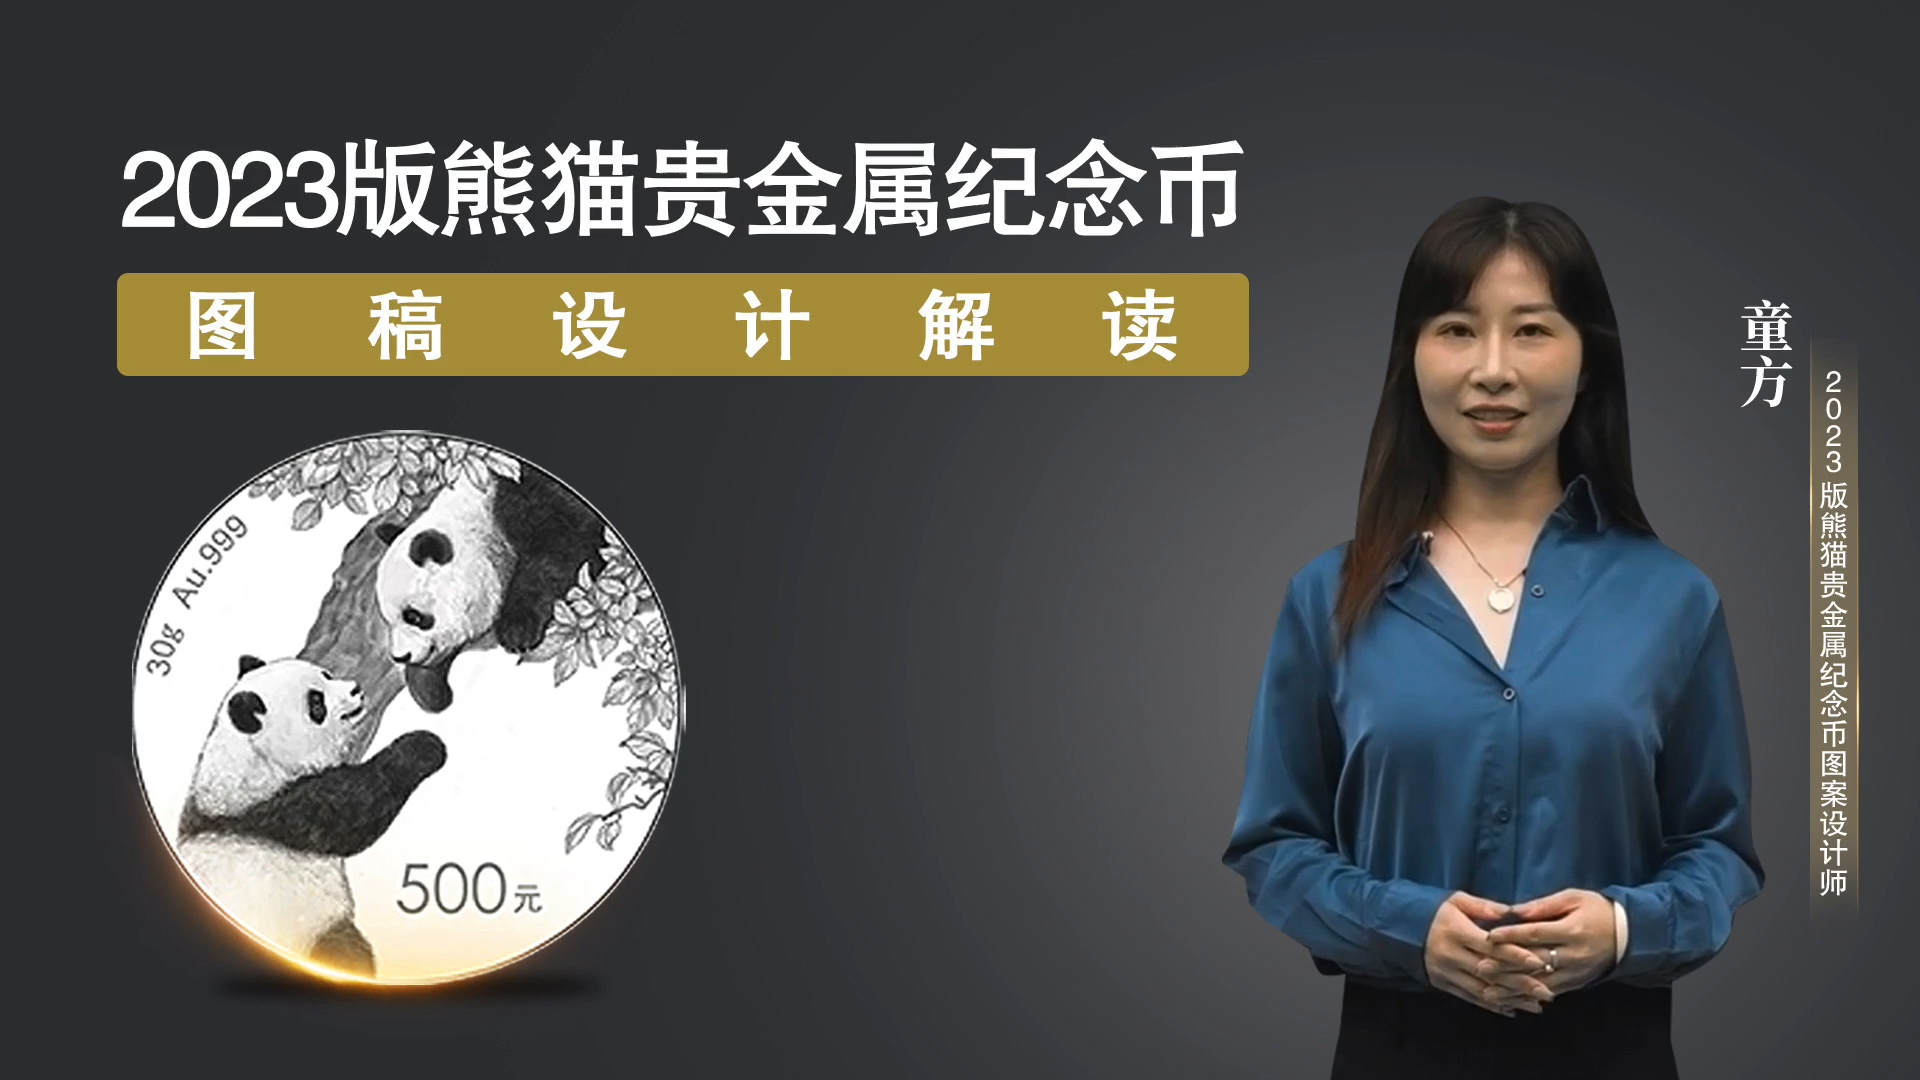 3. 2023版熊猫贵金属纪念币设计图稿解读.png